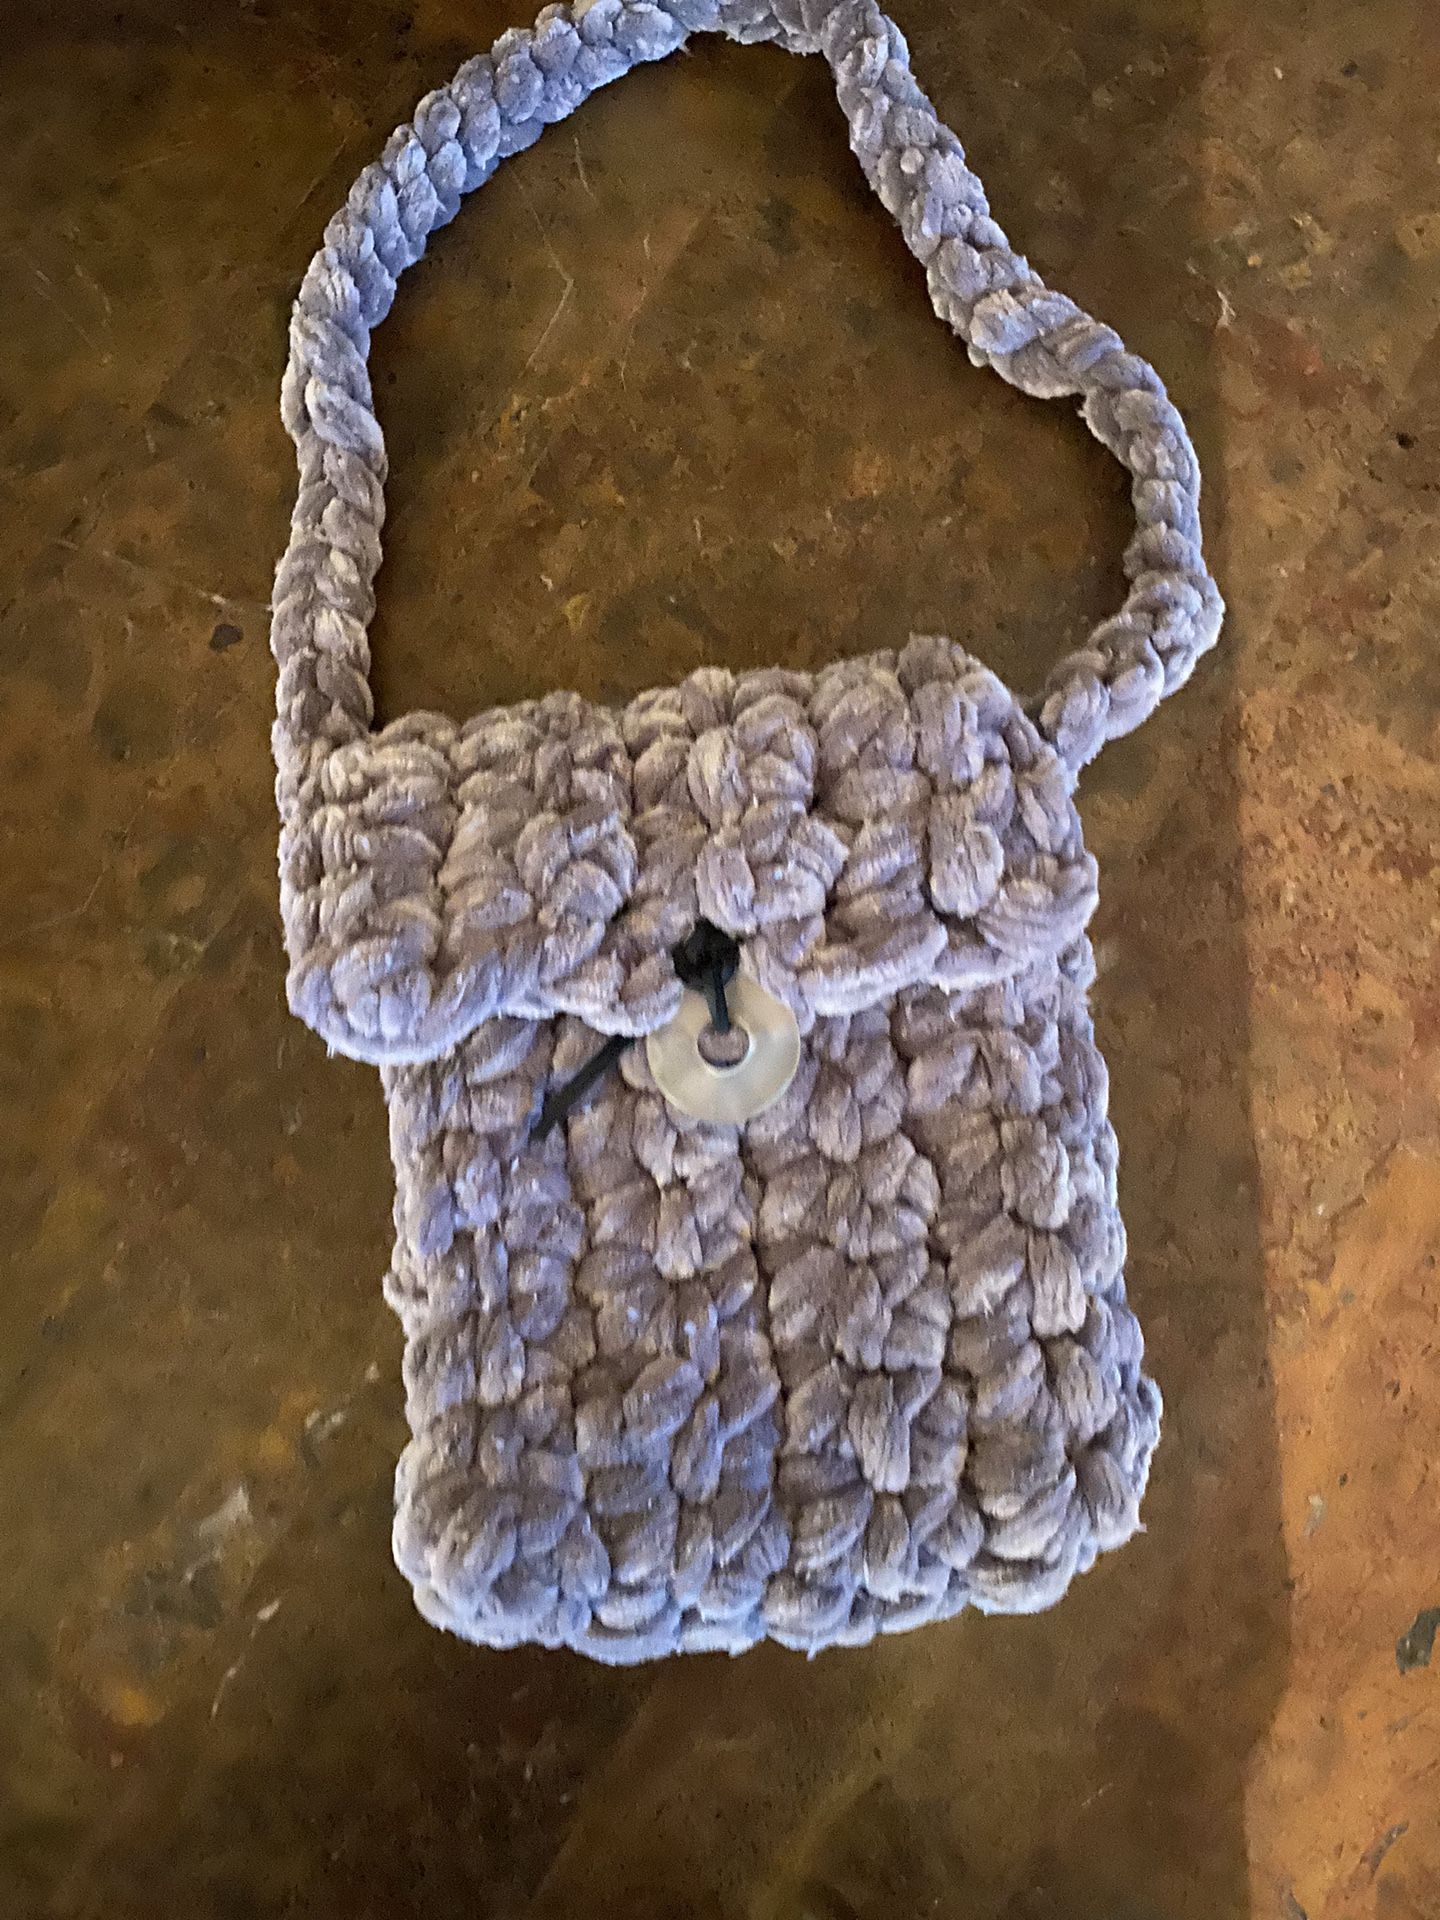 Crocheted Velveteen Shoulder Bag